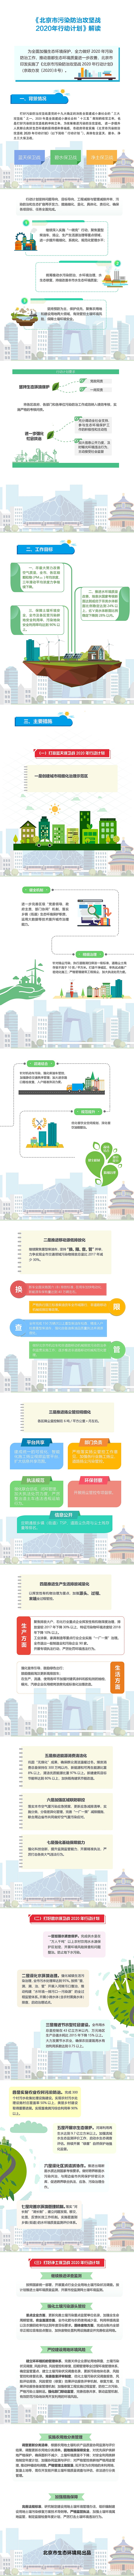 图解《北京市污染防治攻坚战2020年行动计划》.jpg